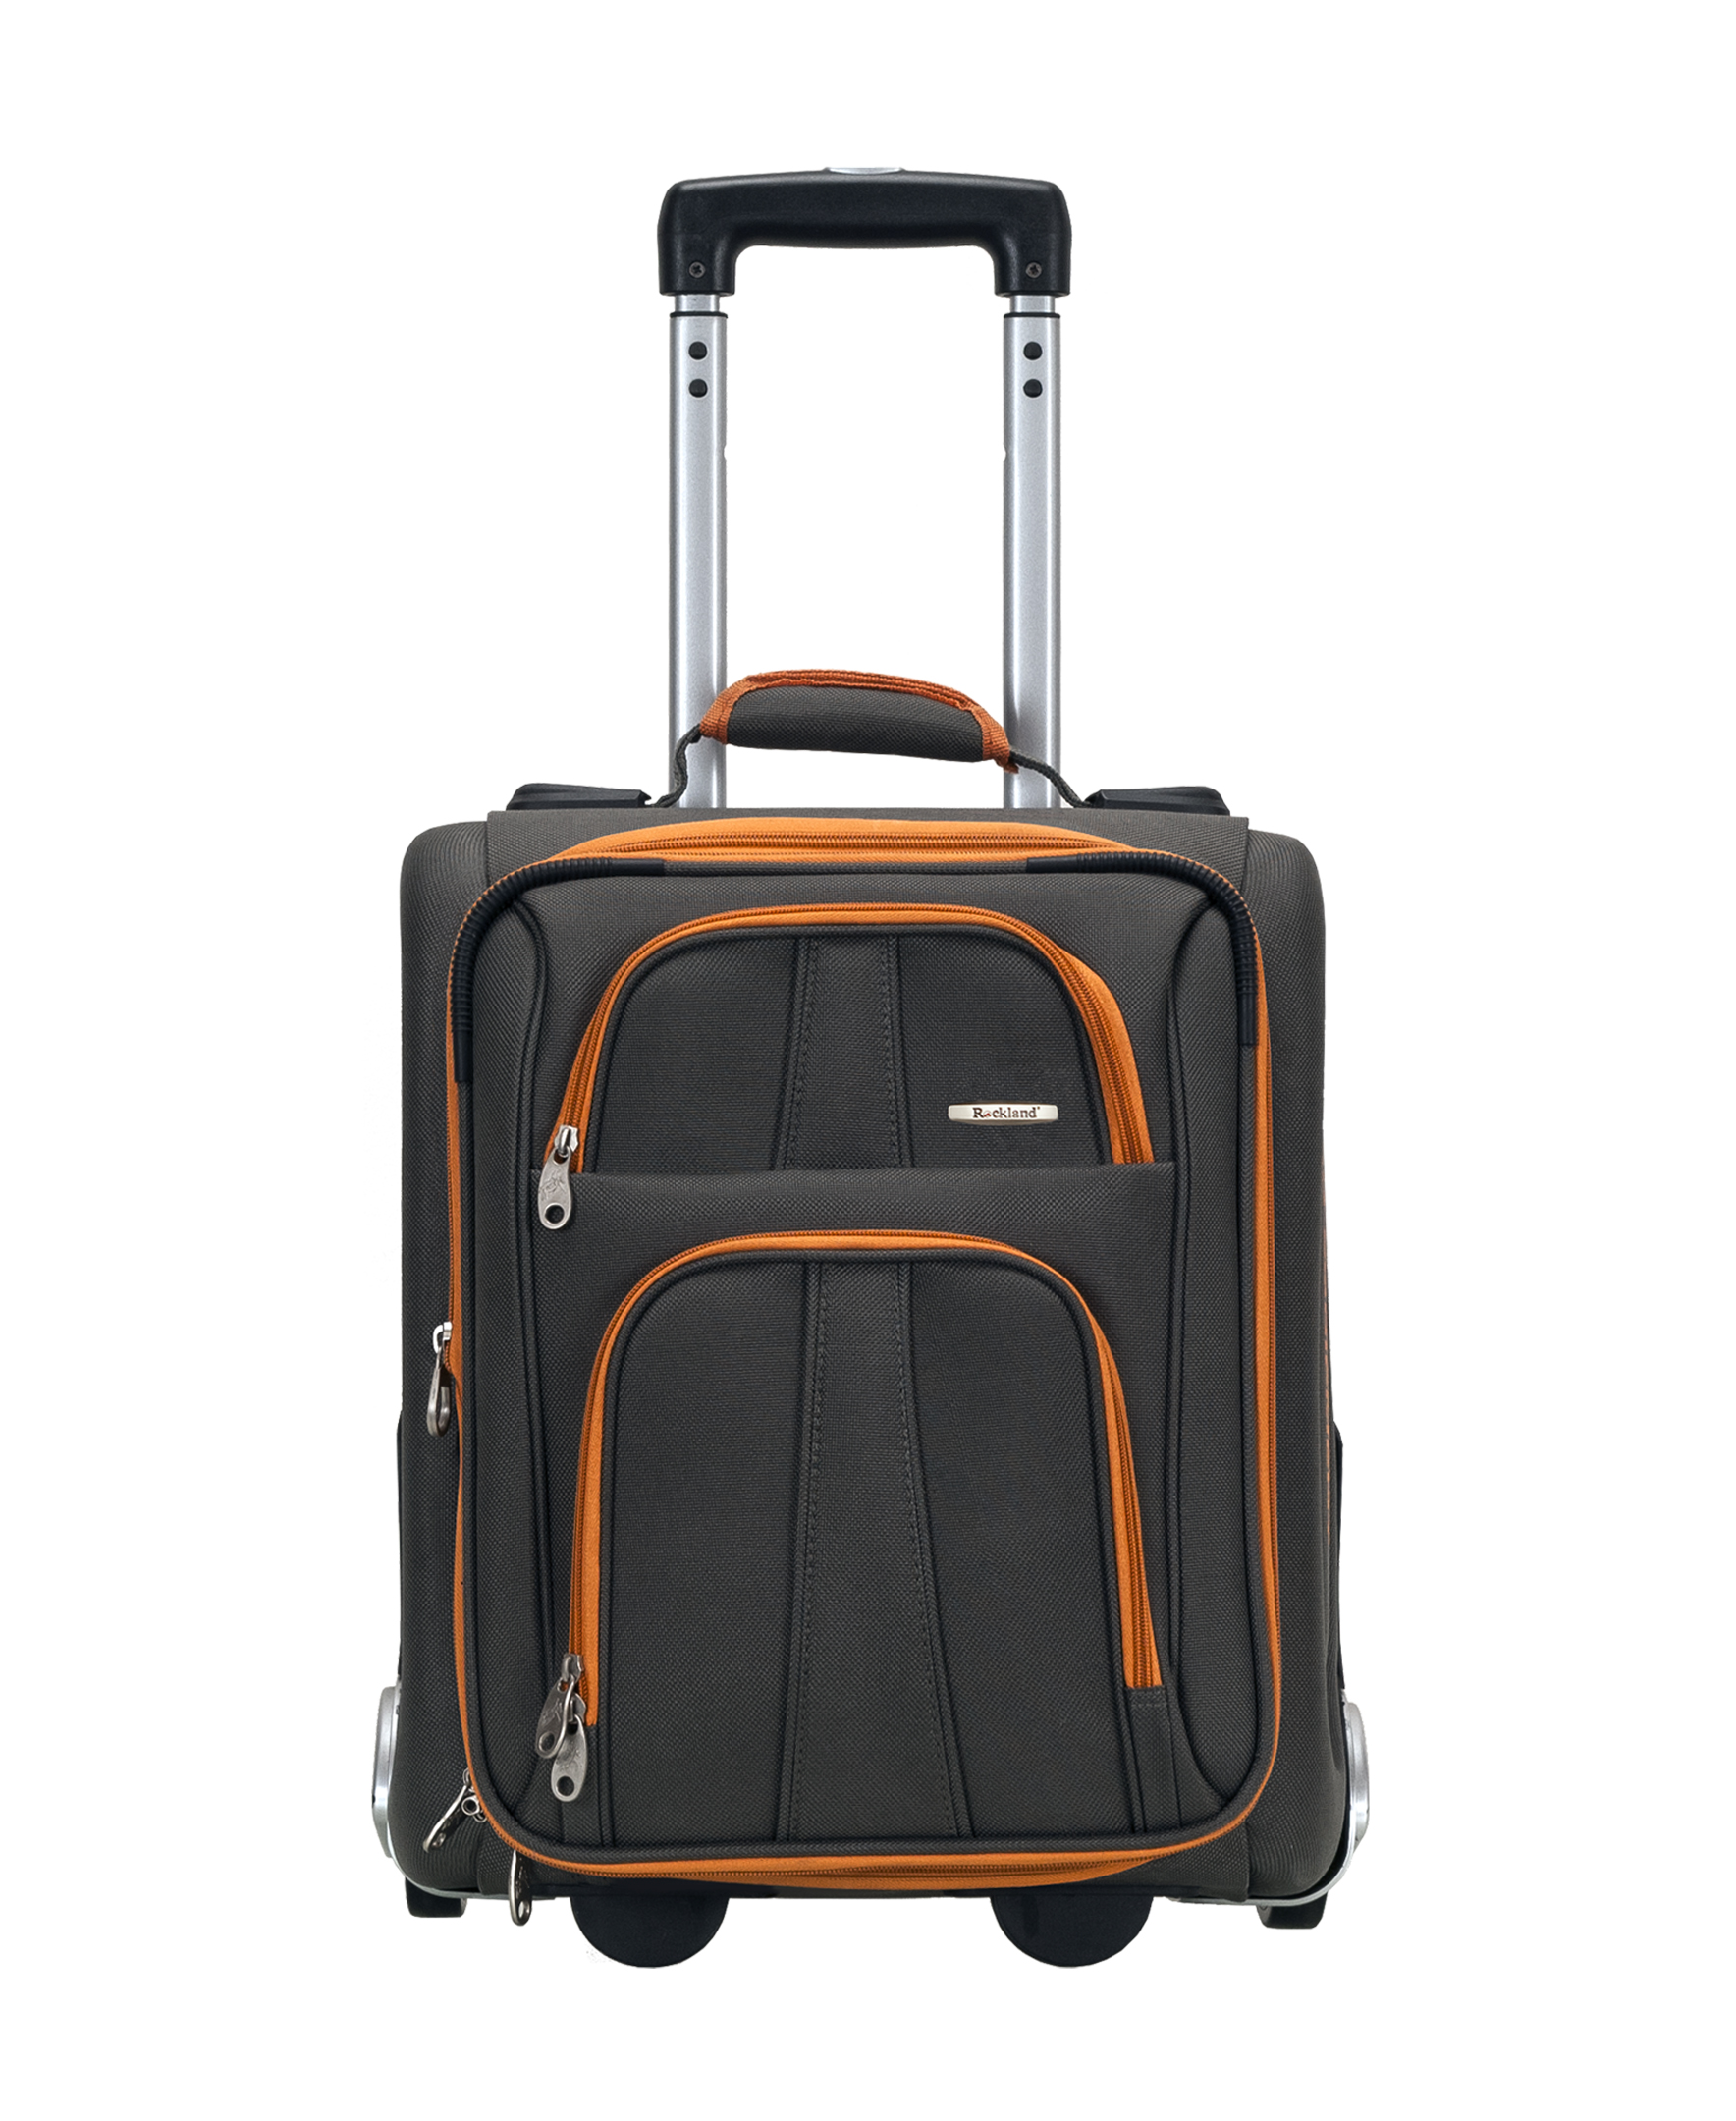 Rockland Luggage Varsity 4-Piece Softside Expandable Luggage Set F120 - image 4 of 6